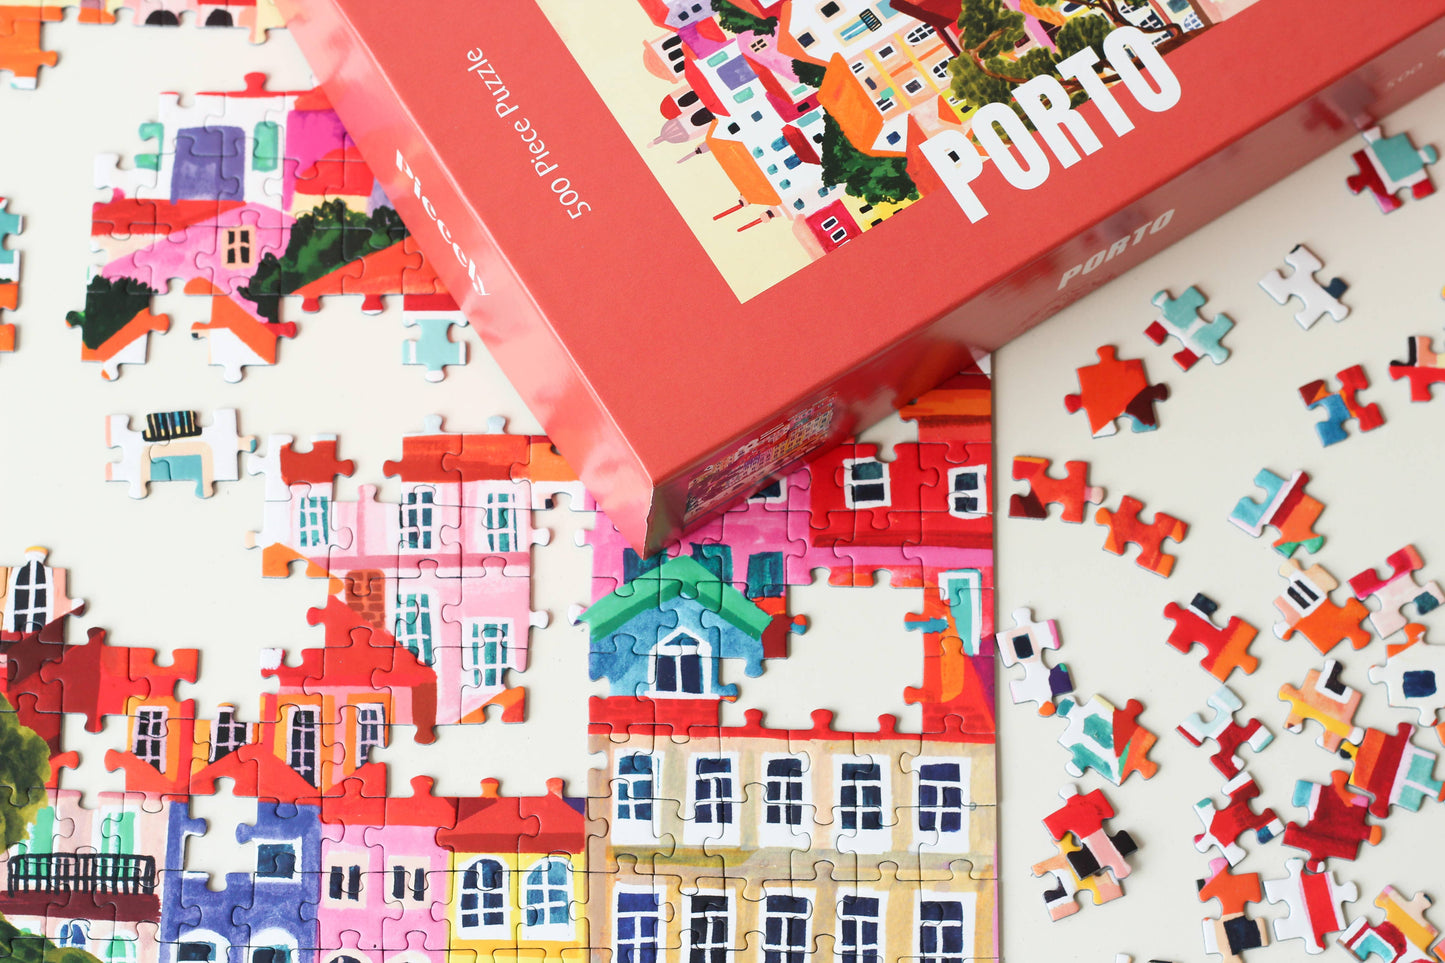 Porto Puzzle, 500 pieces